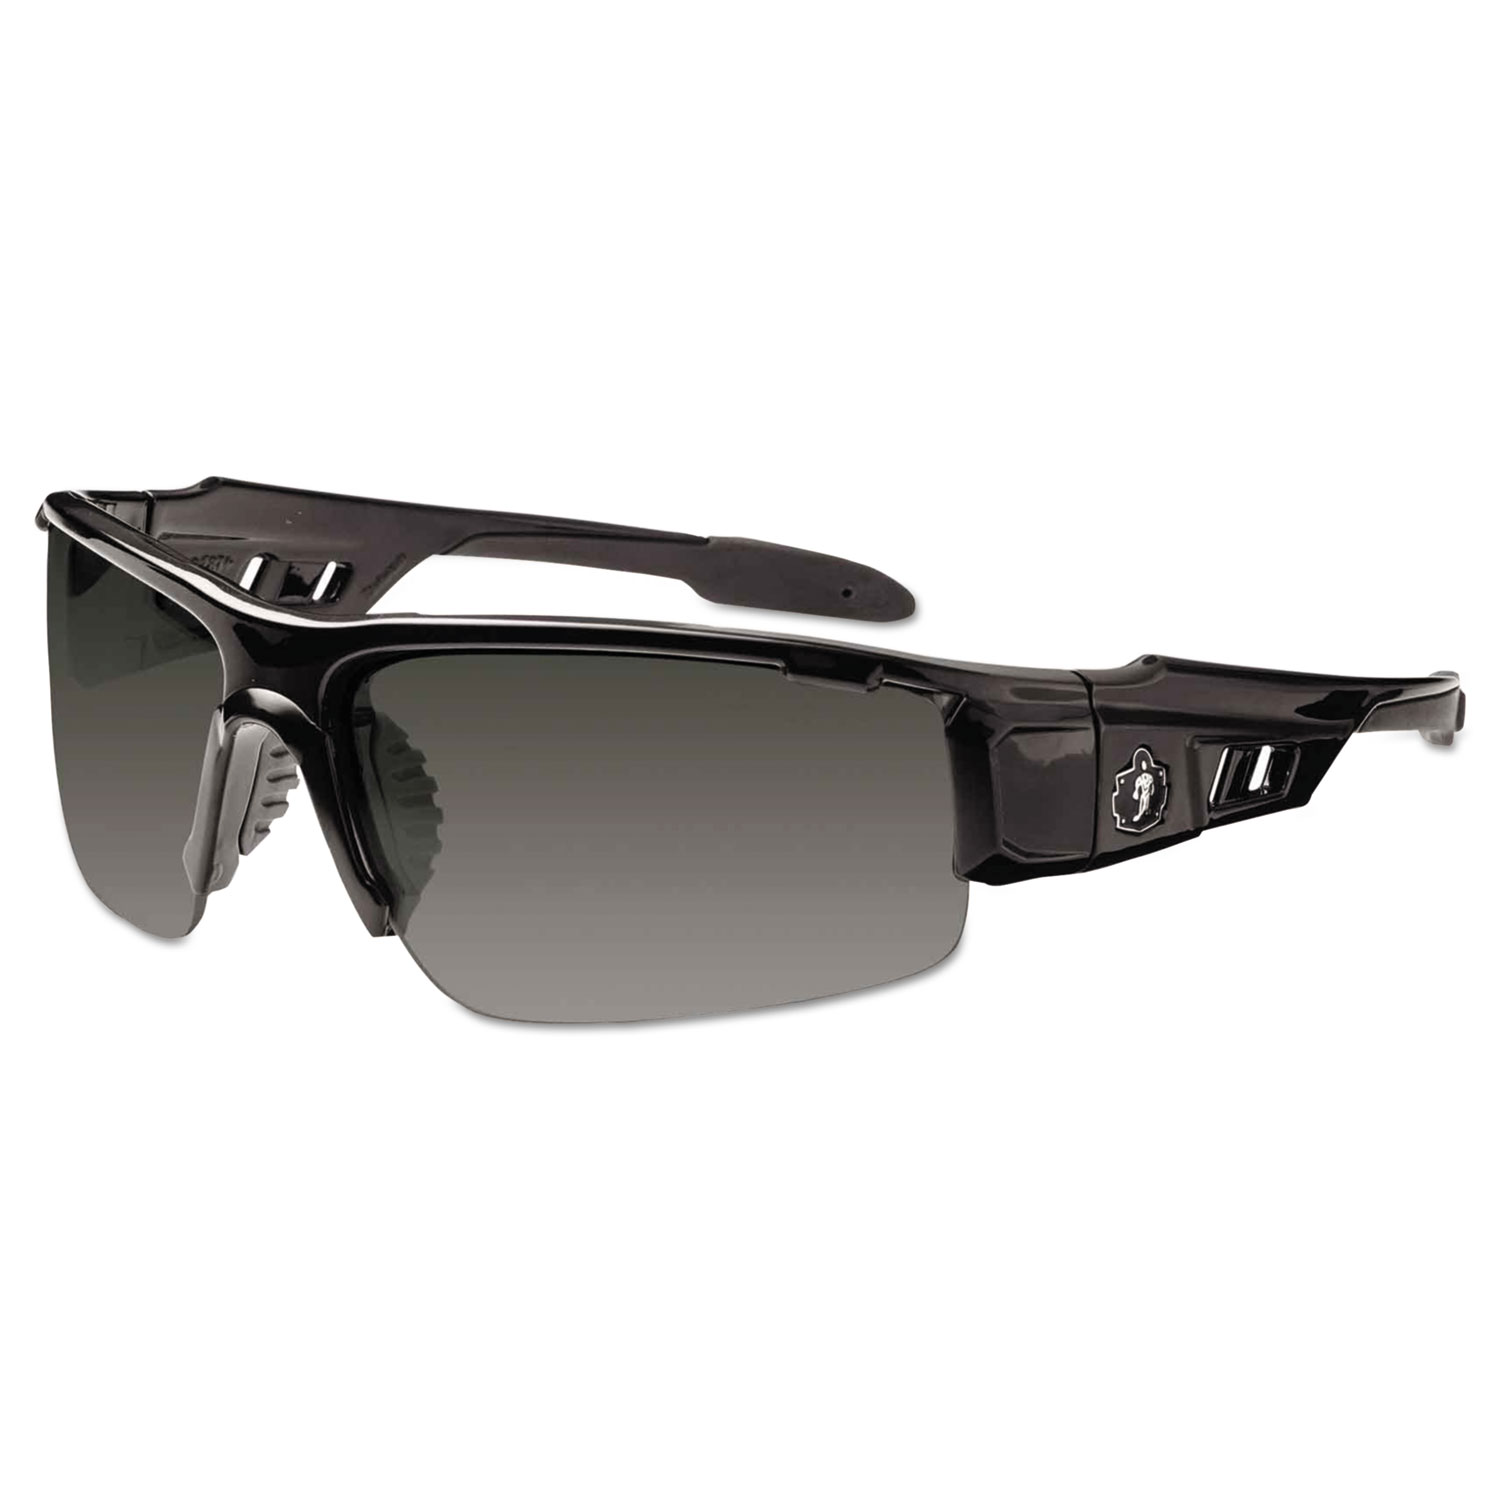  ergodyne 52030 Skullerz Dagr Safety Glasses, Black Frame/Smoke Lens, Nylon/Polycarb (EGO52030) 